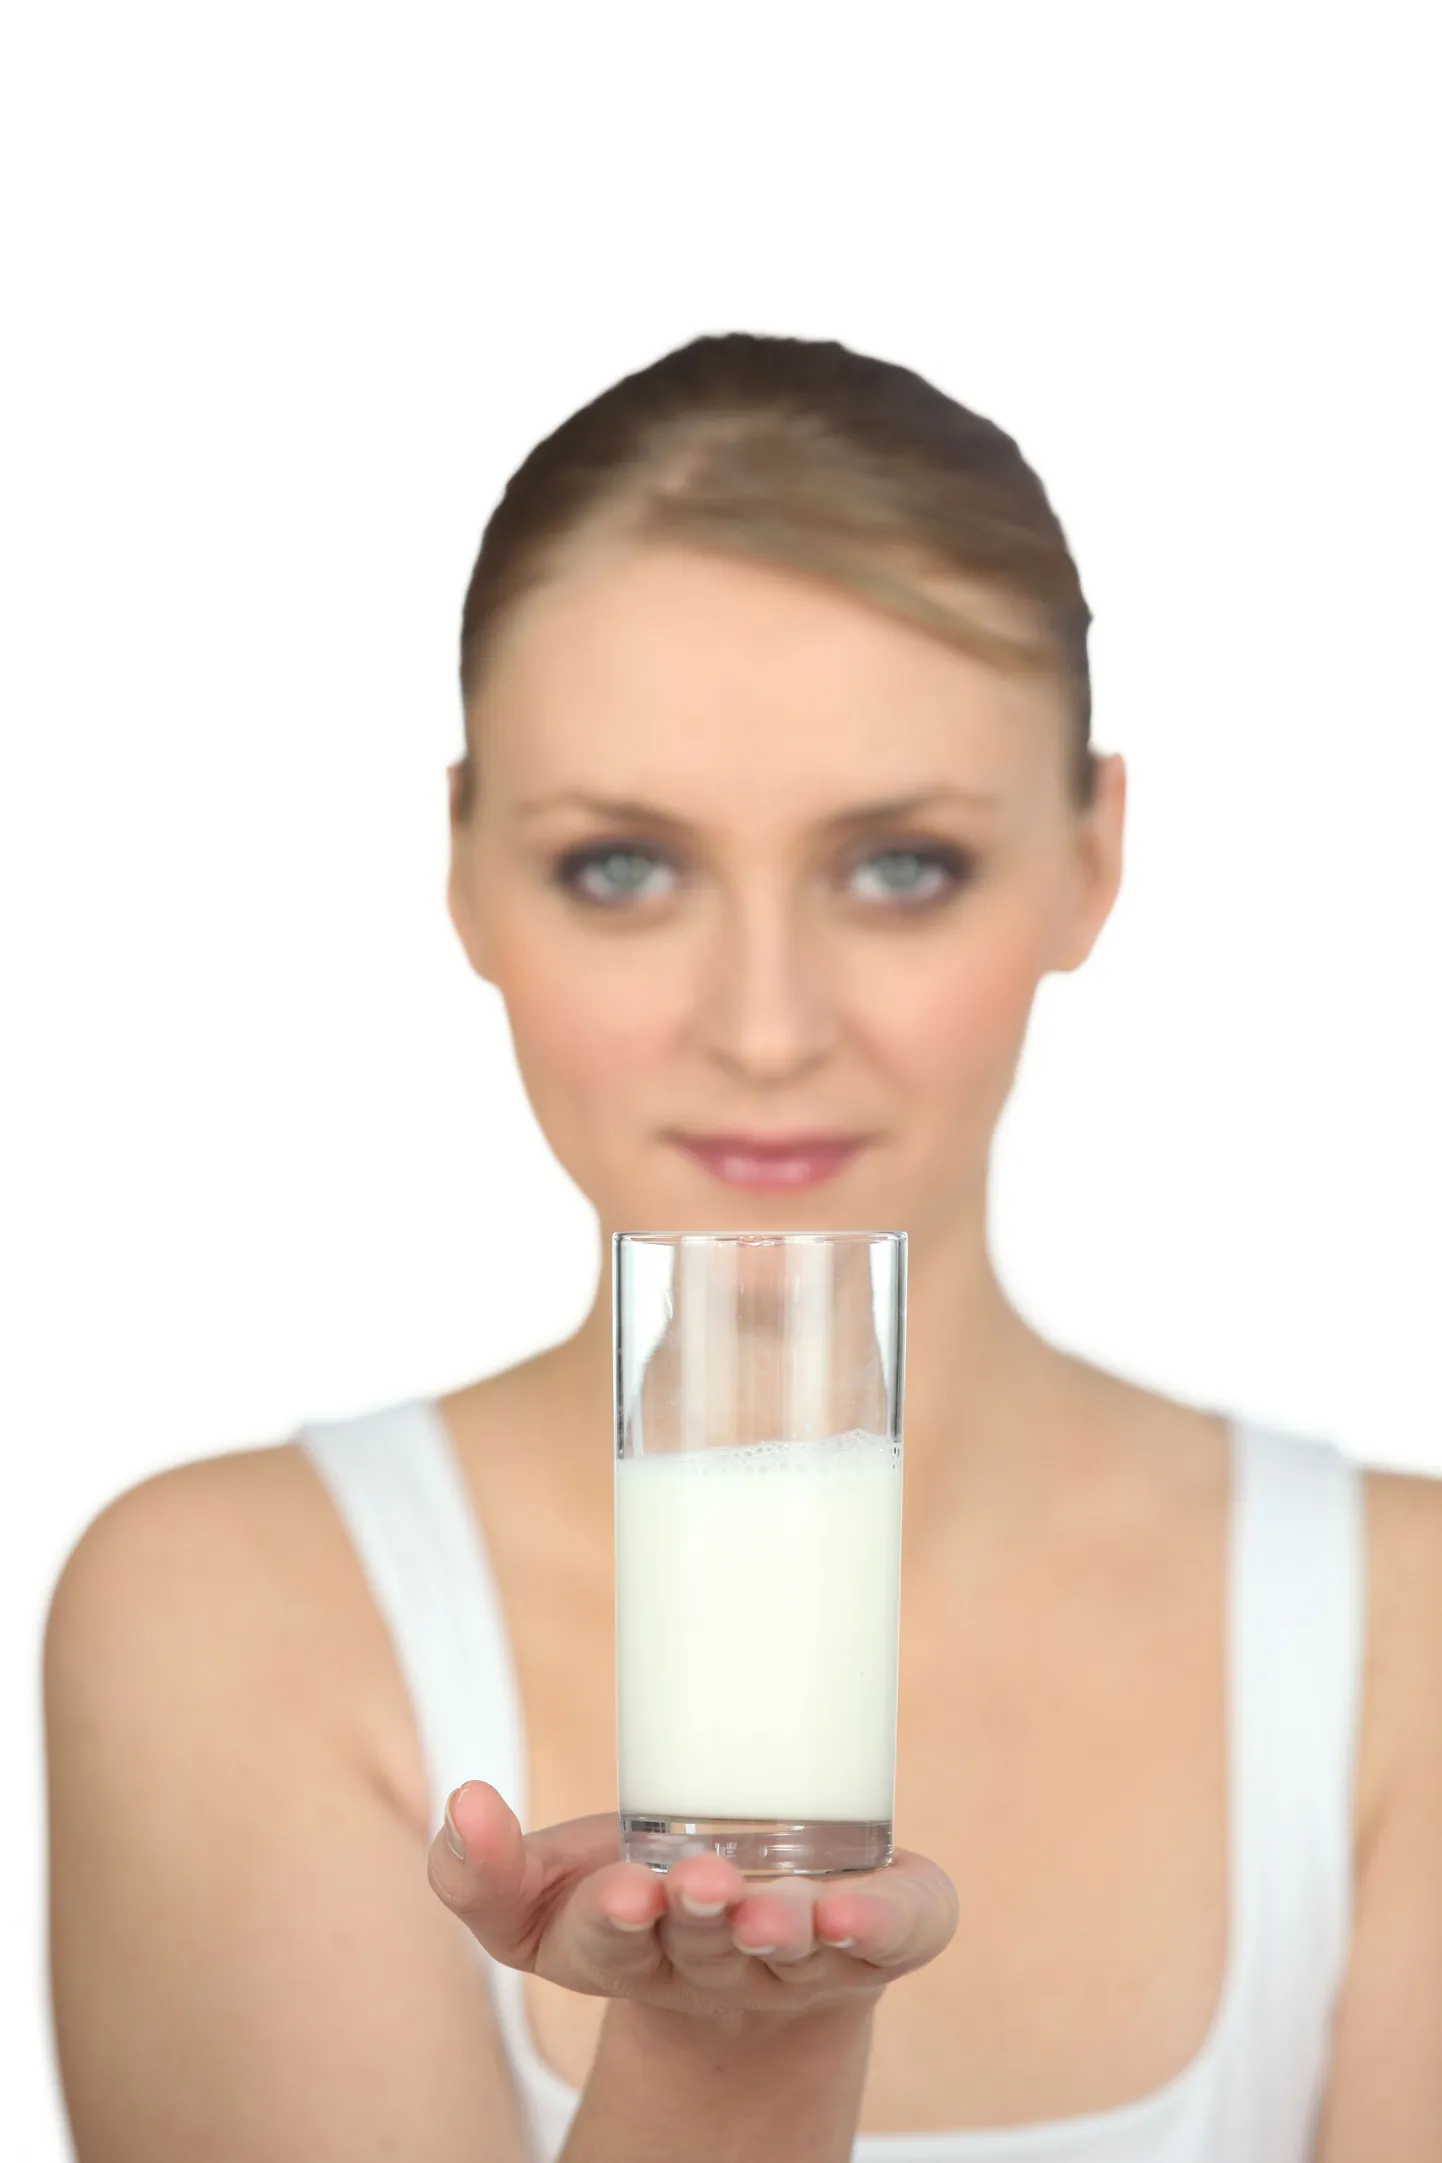 Молоко. Фото иллюстративное